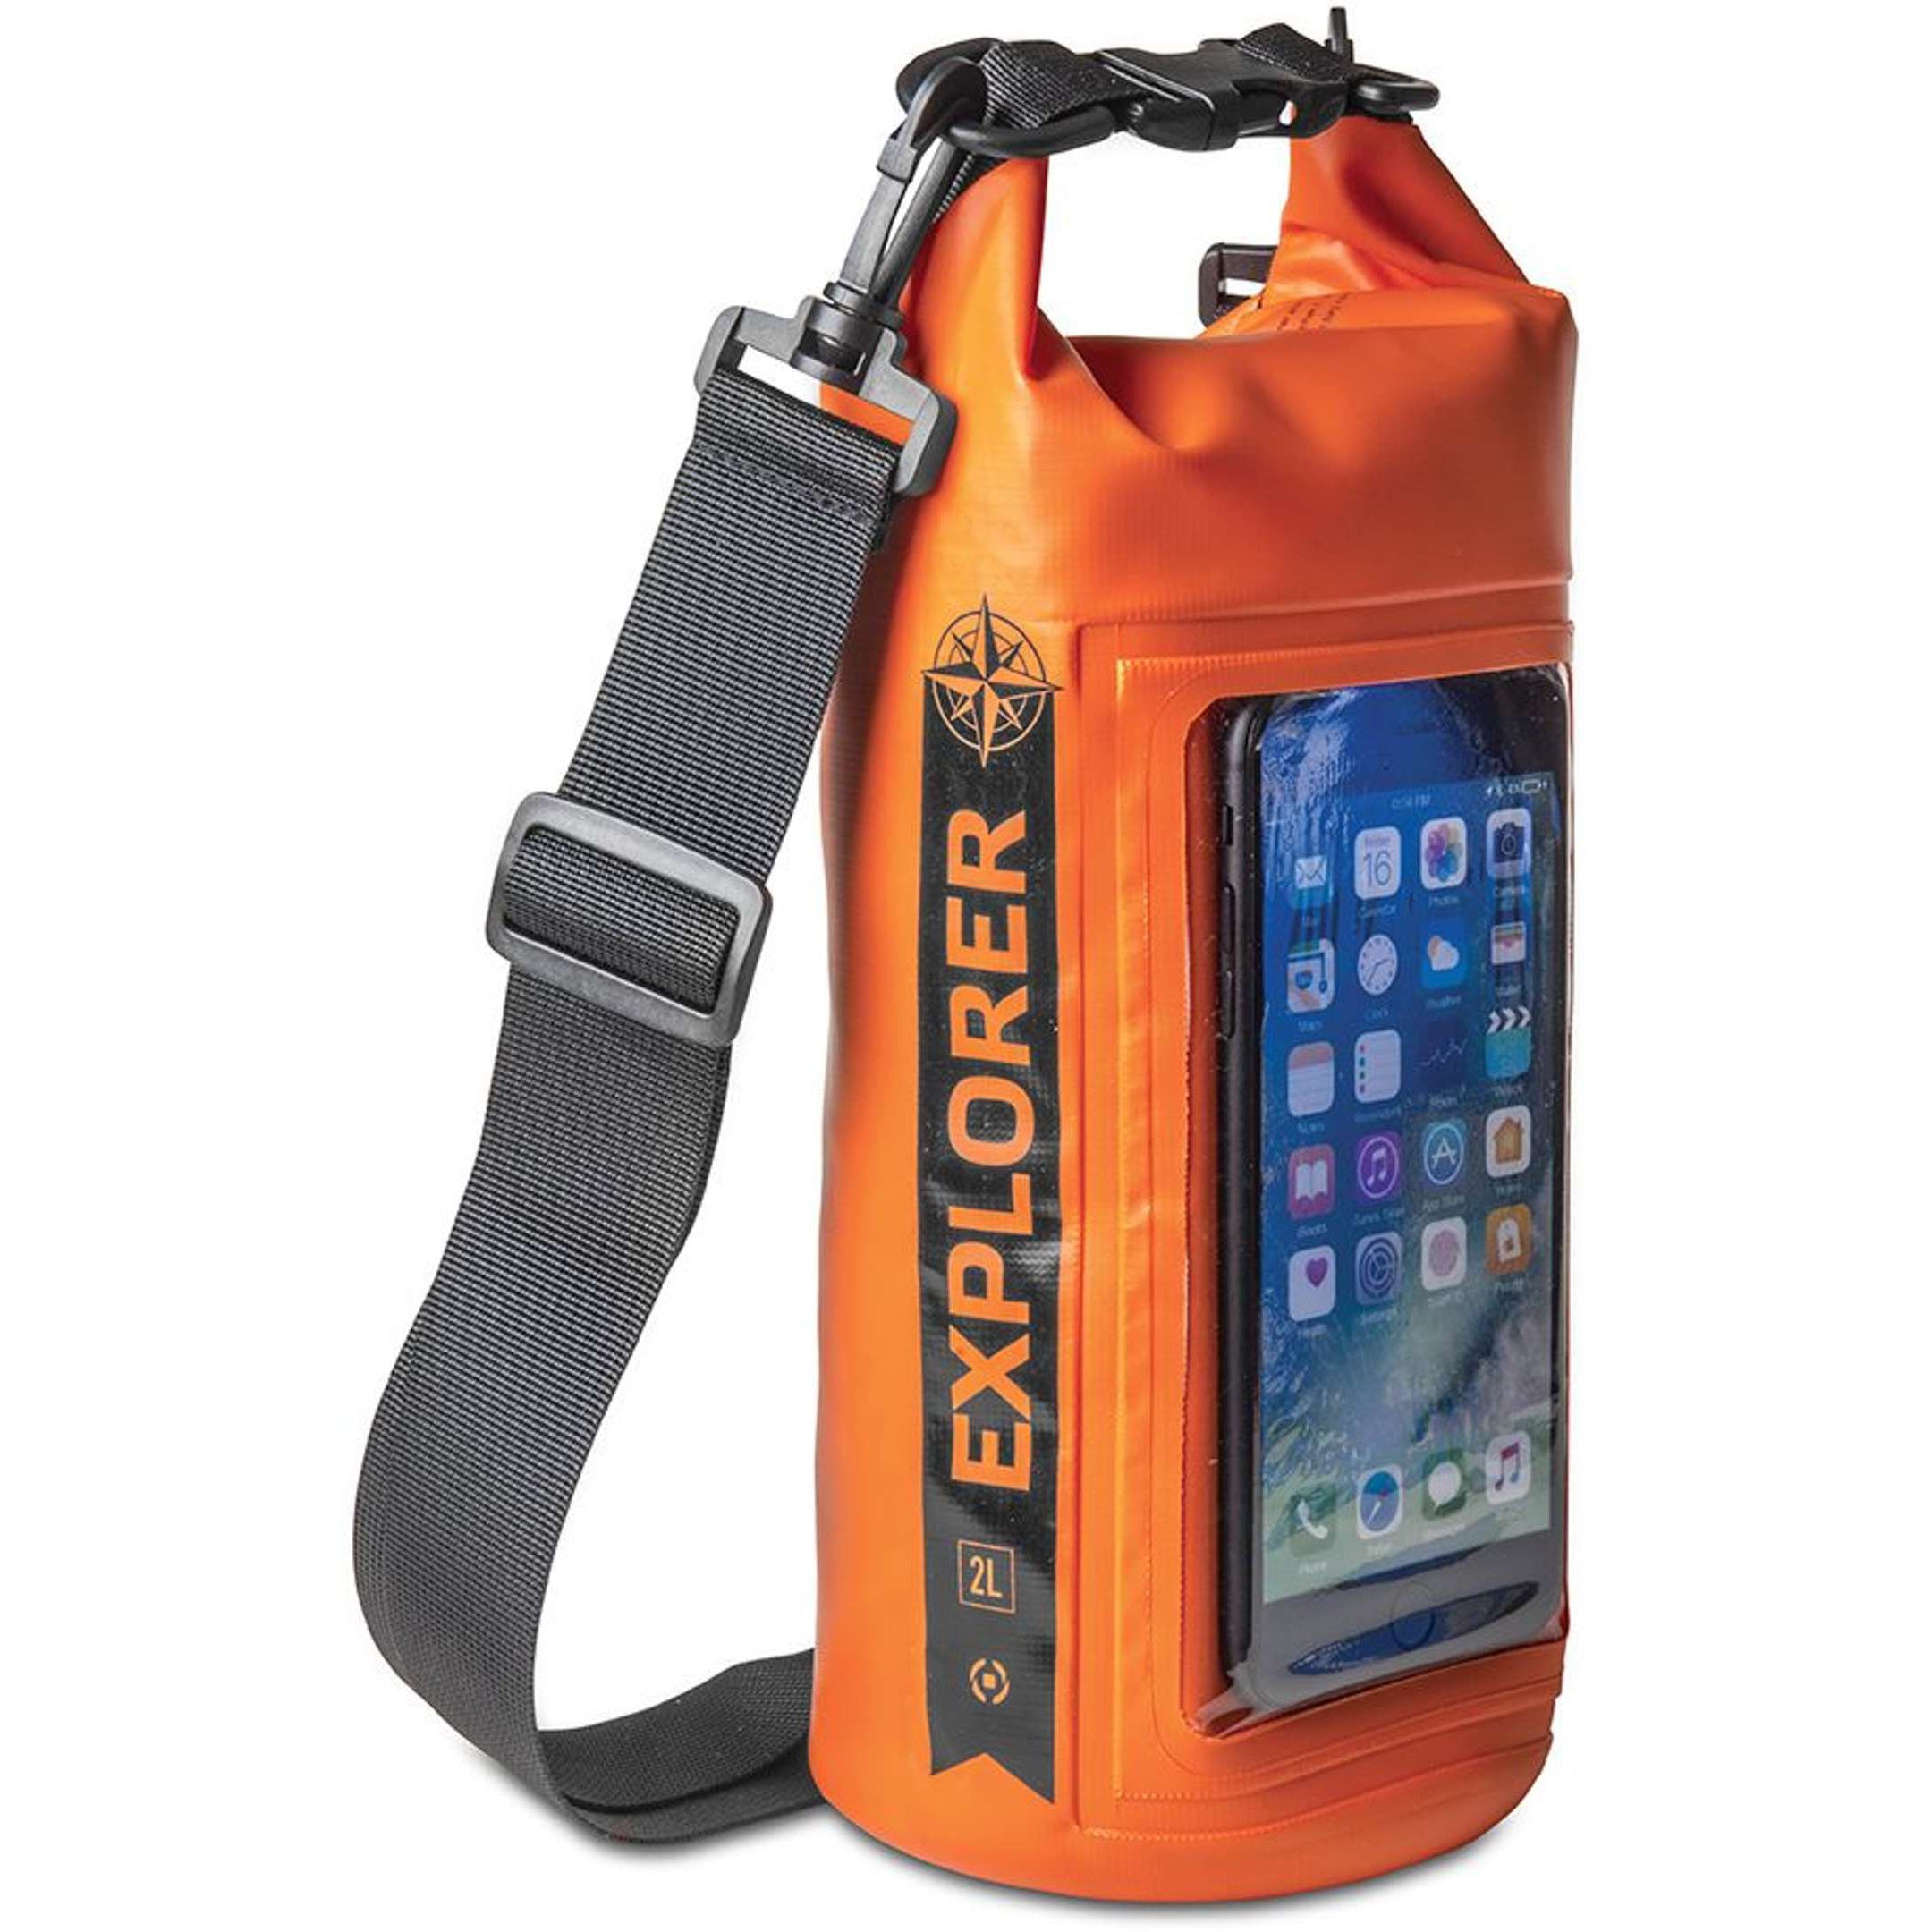 Rugzak Explorer 2 liter van Celly oranje zijaanzicht met smartphone in de houder